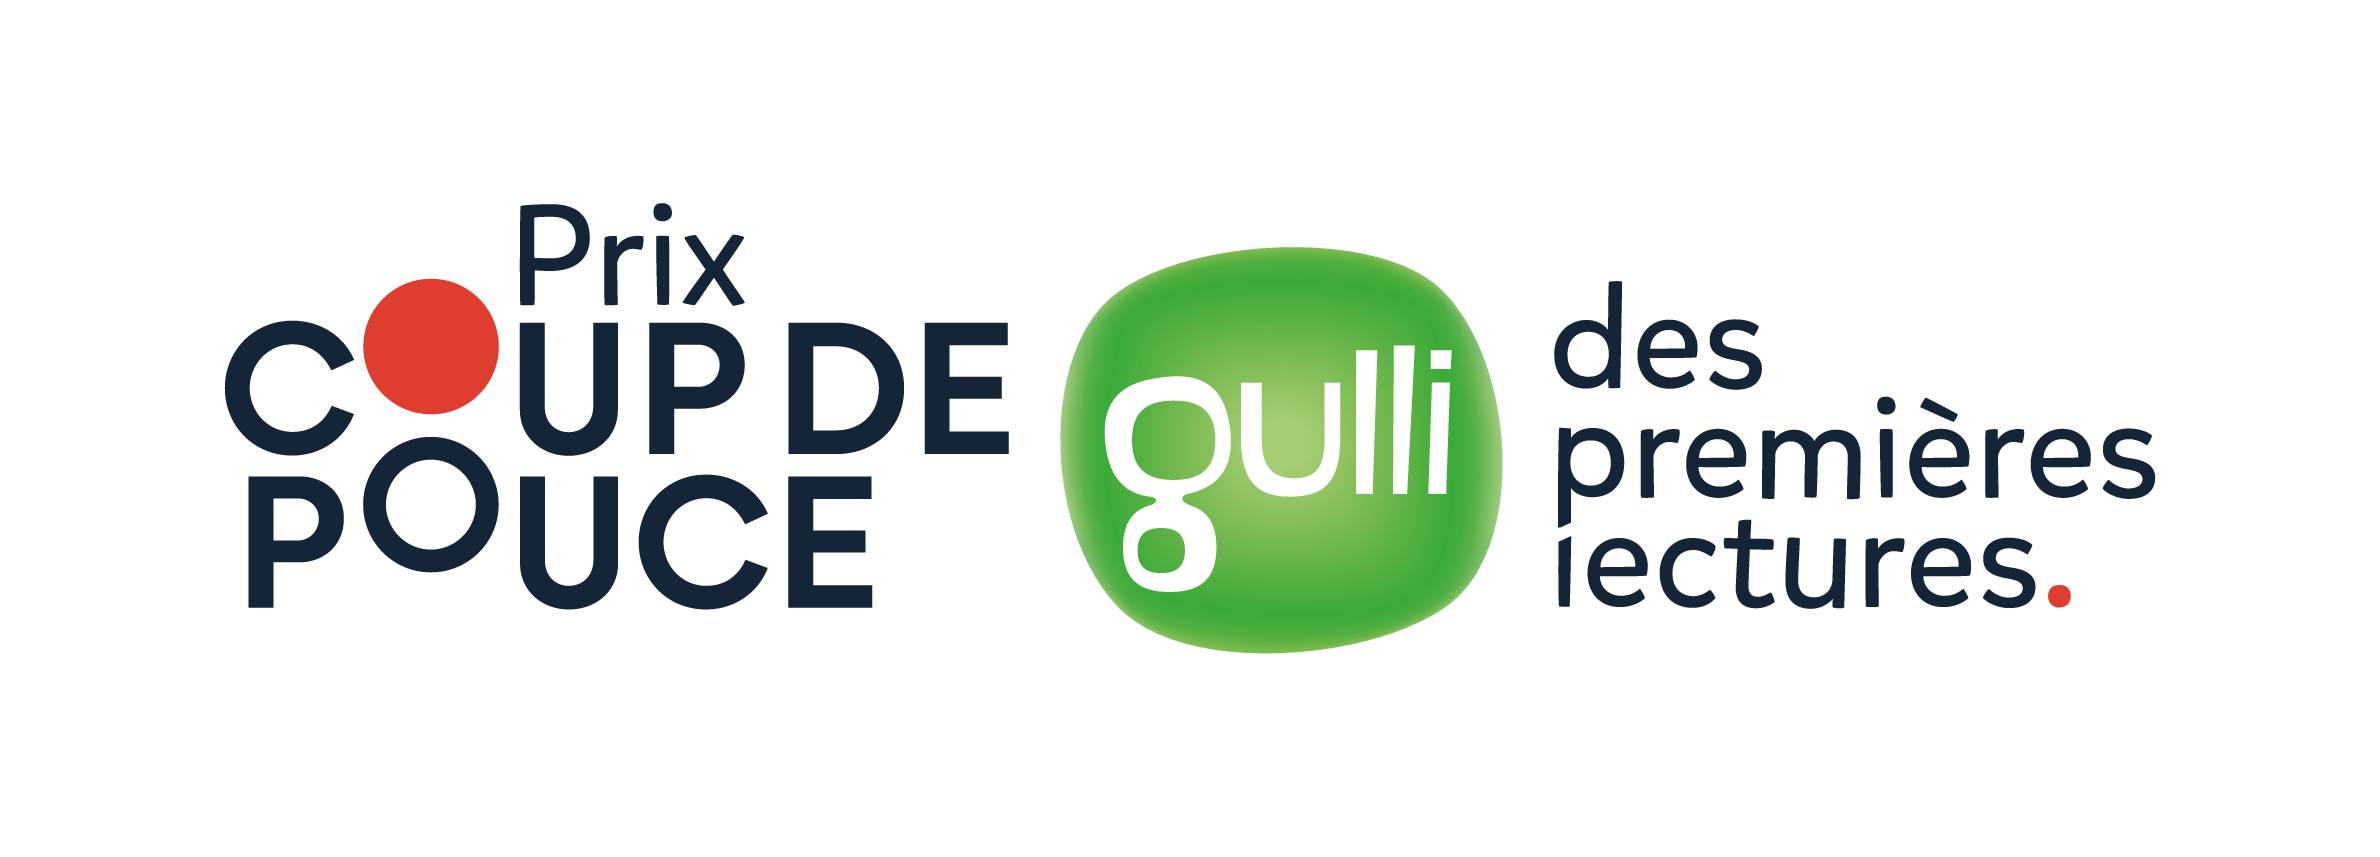 Logo Prix Coup de Pouce - Gulli des Premières Lectures